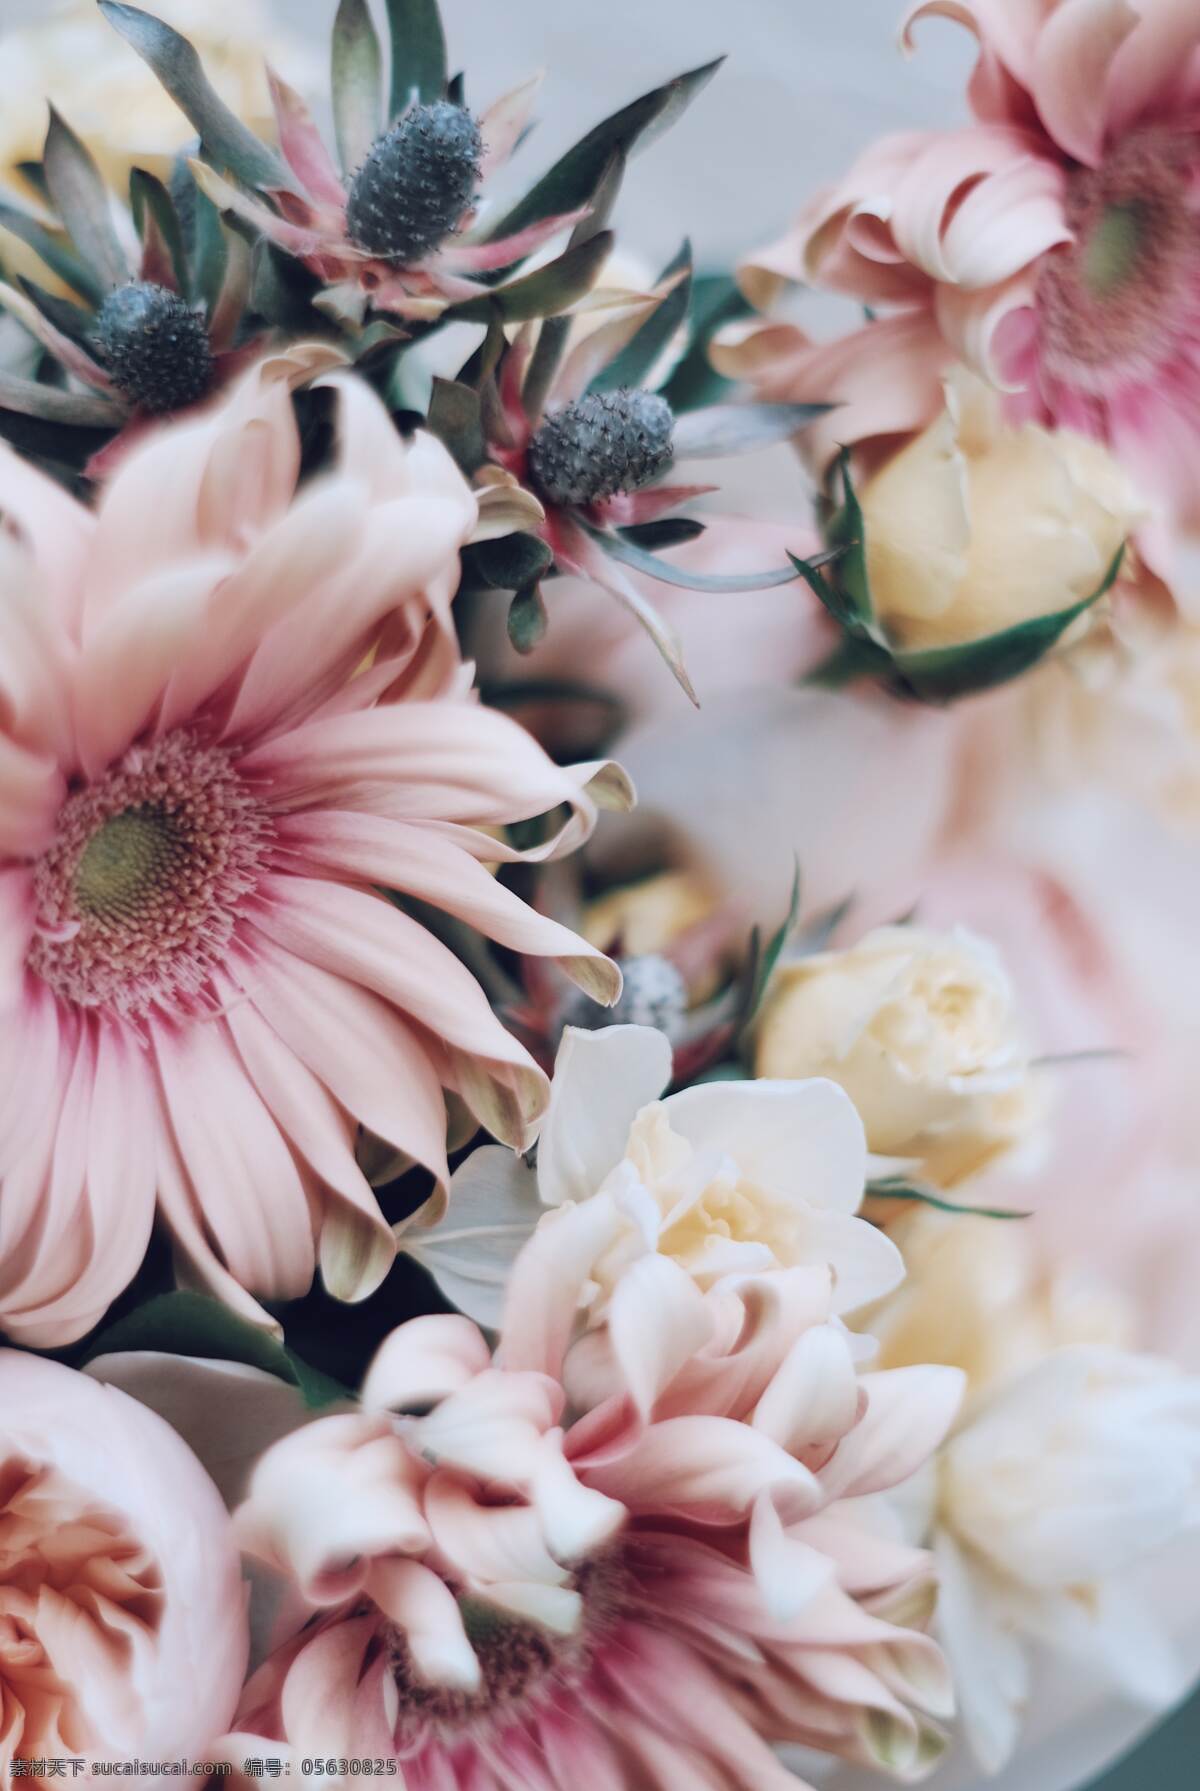 高清 花 壁纸图片 高清花朵背景 手机壁纸 玫瑰花 向日葵 浪漫花朵 粉色花朵背景 婚礼素材 生物世界 花草